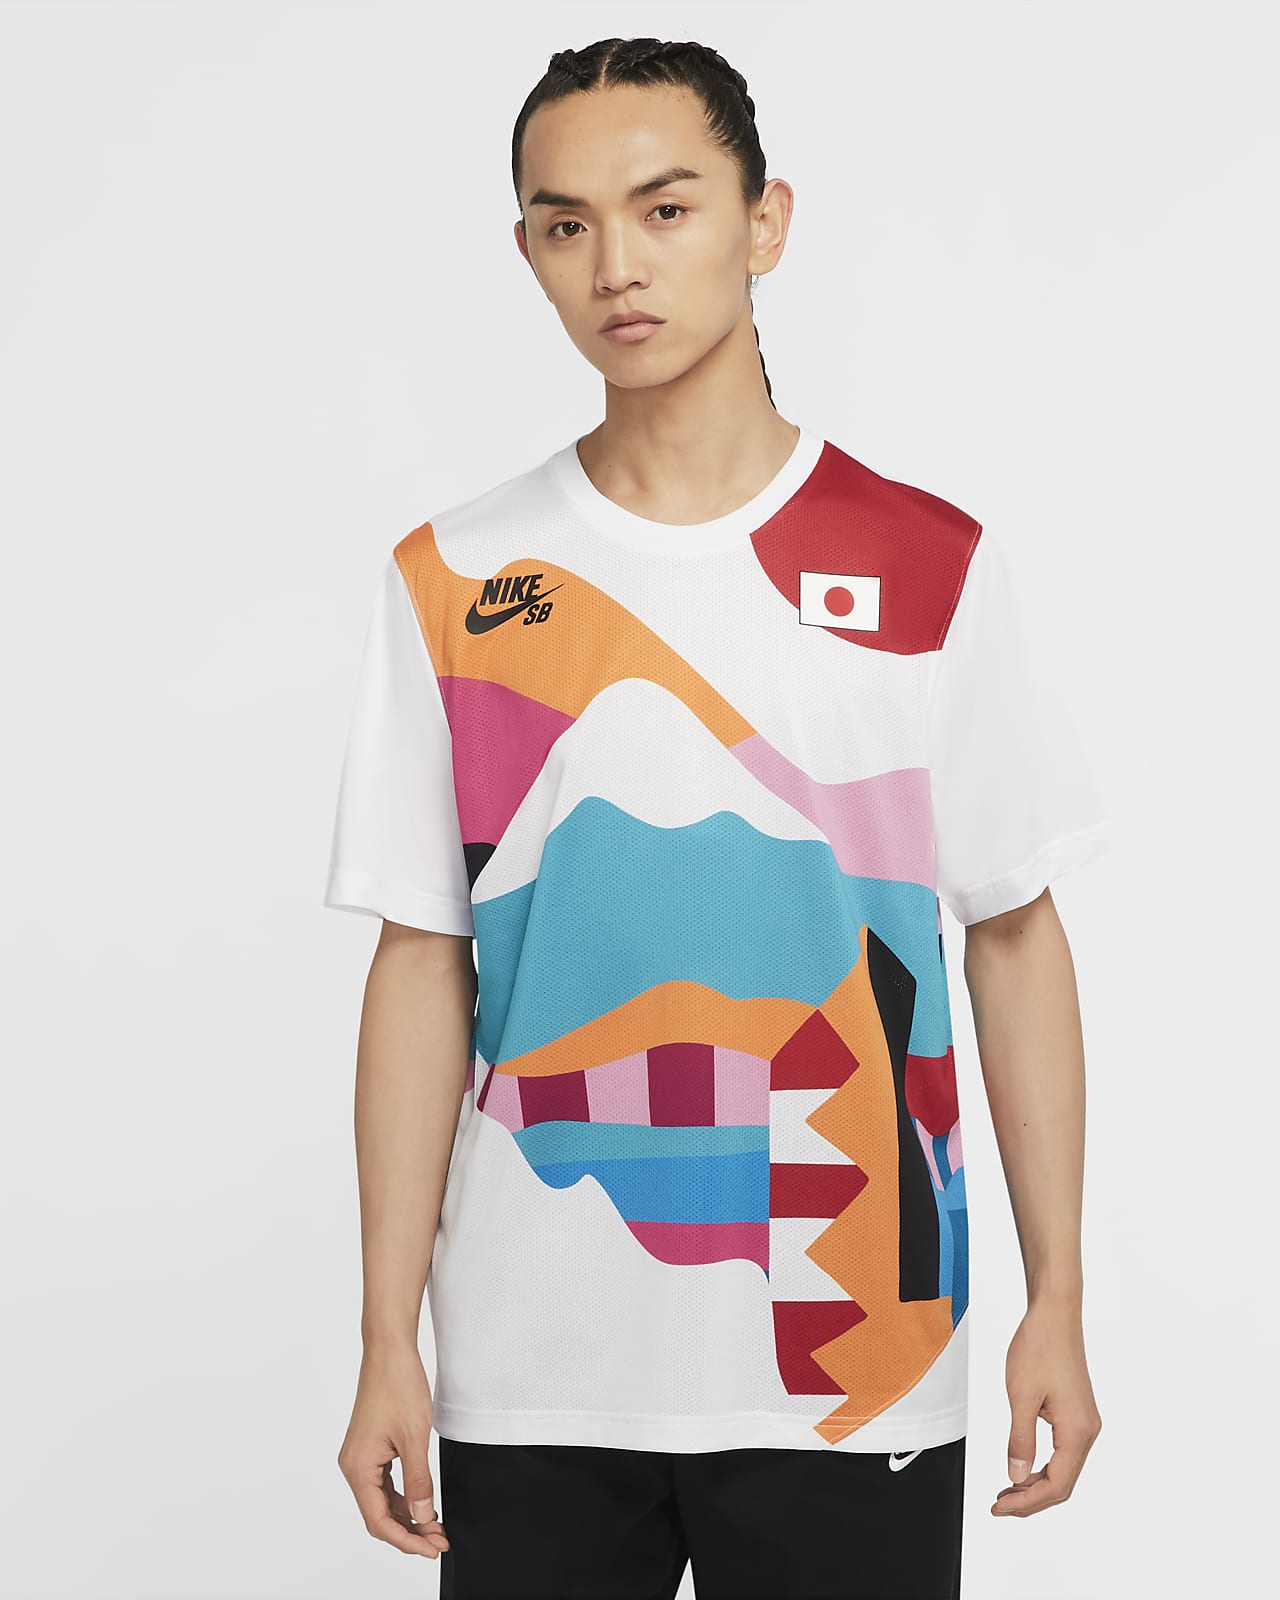 堀米雄斗 Tシャツ セットアップ シューズのブランドはナイキ 購入方法や値段は Anser